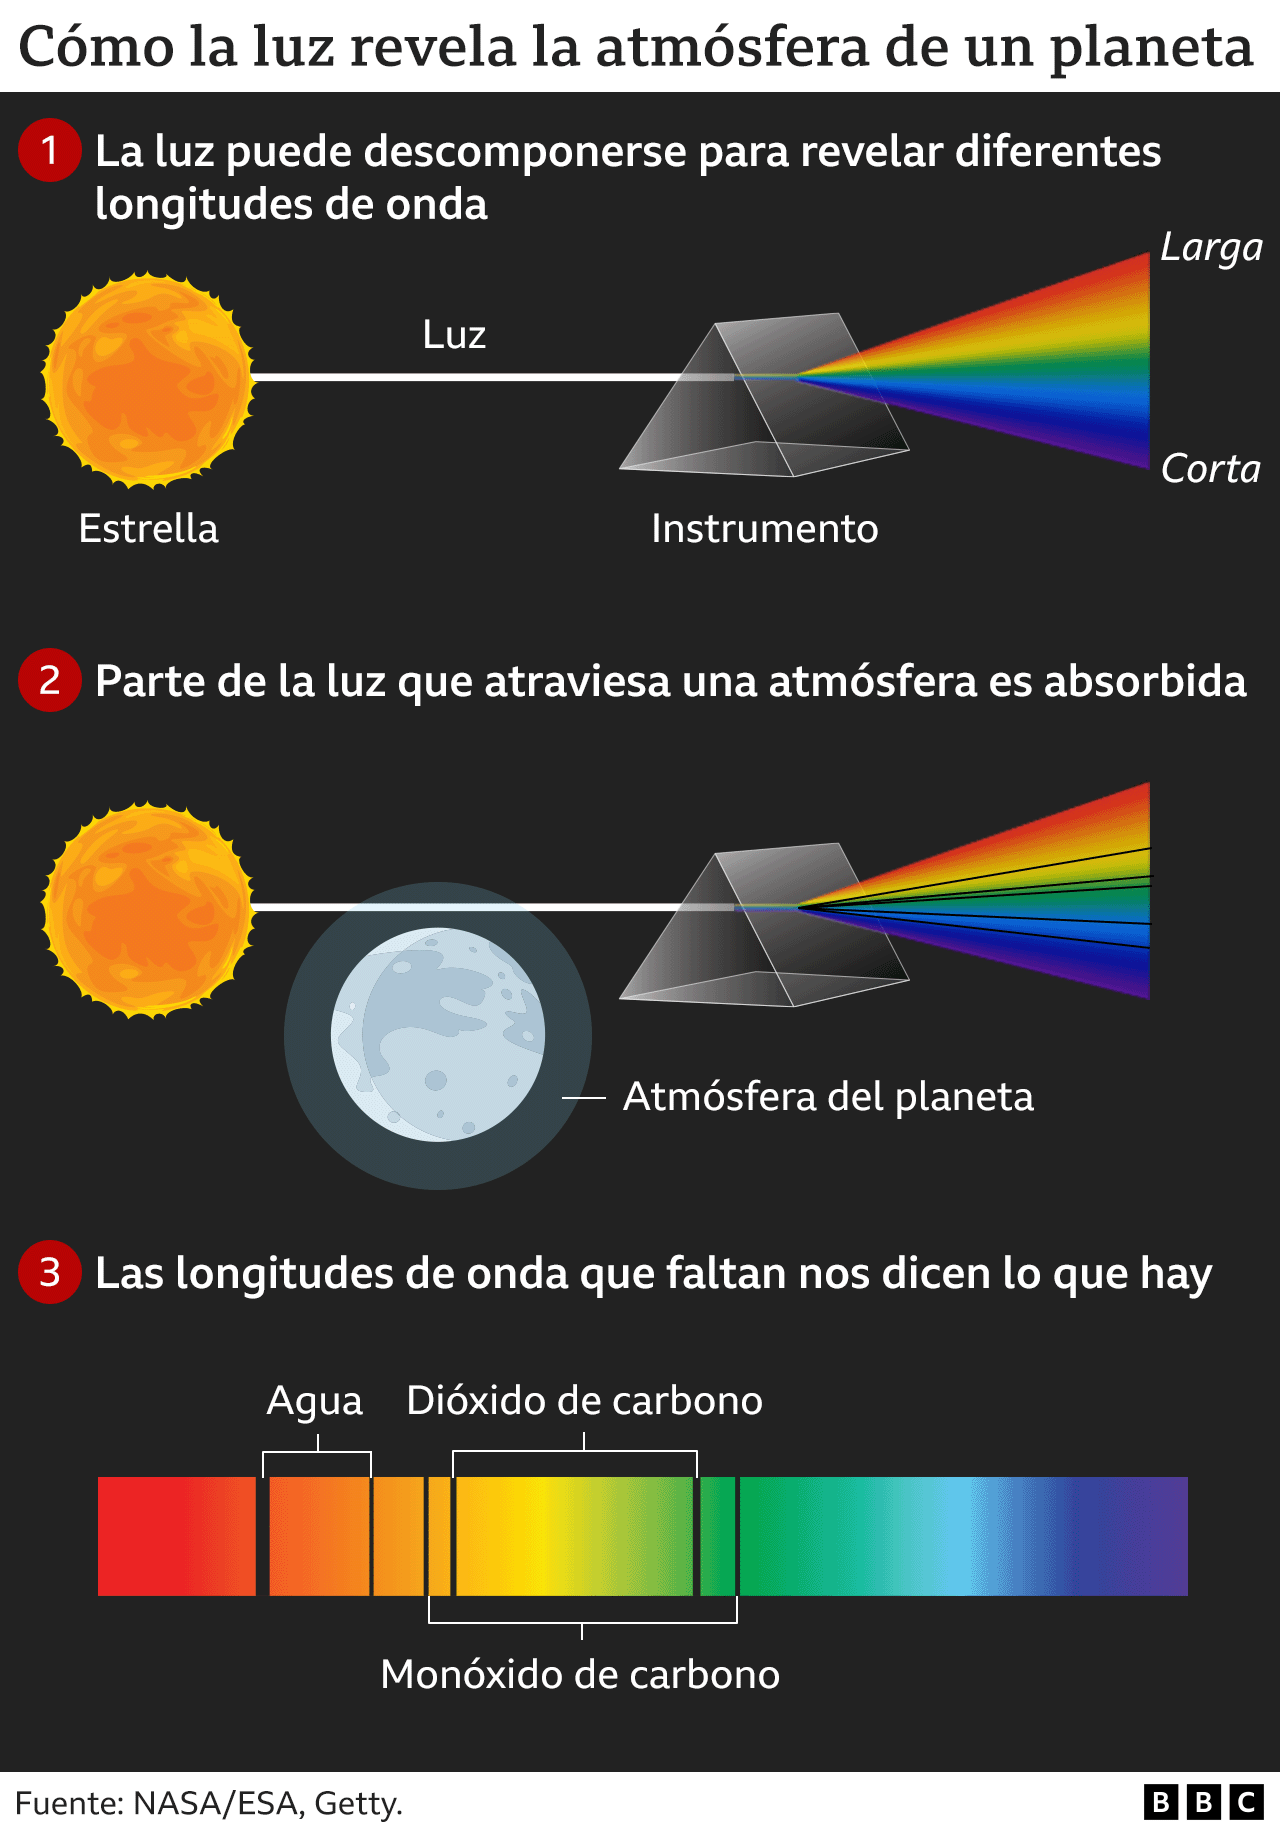 Gráfico de cómo la luz revela la atmósfera de un planeta.